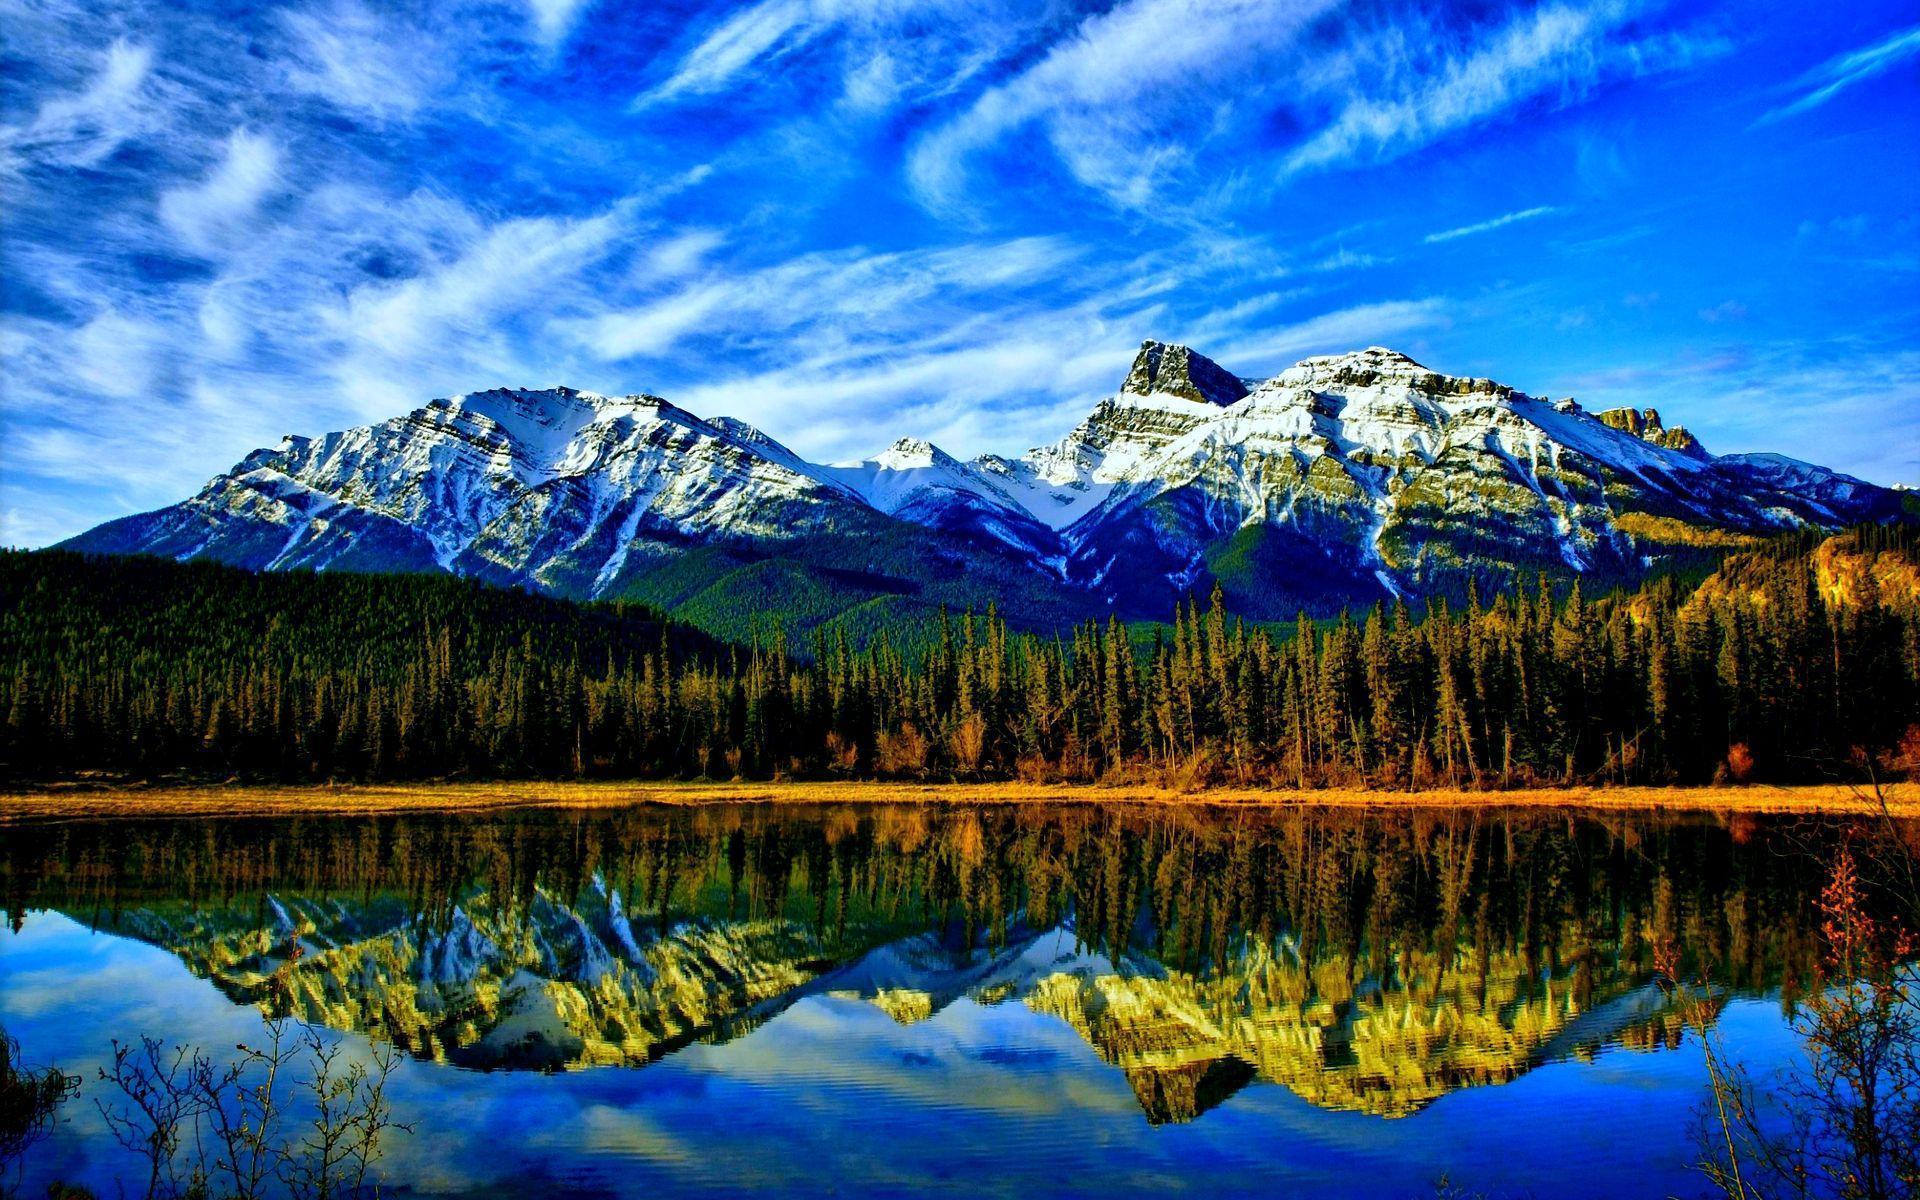 HD Stunning Mountain Lake Wallpaper and Photo. HD Landscape